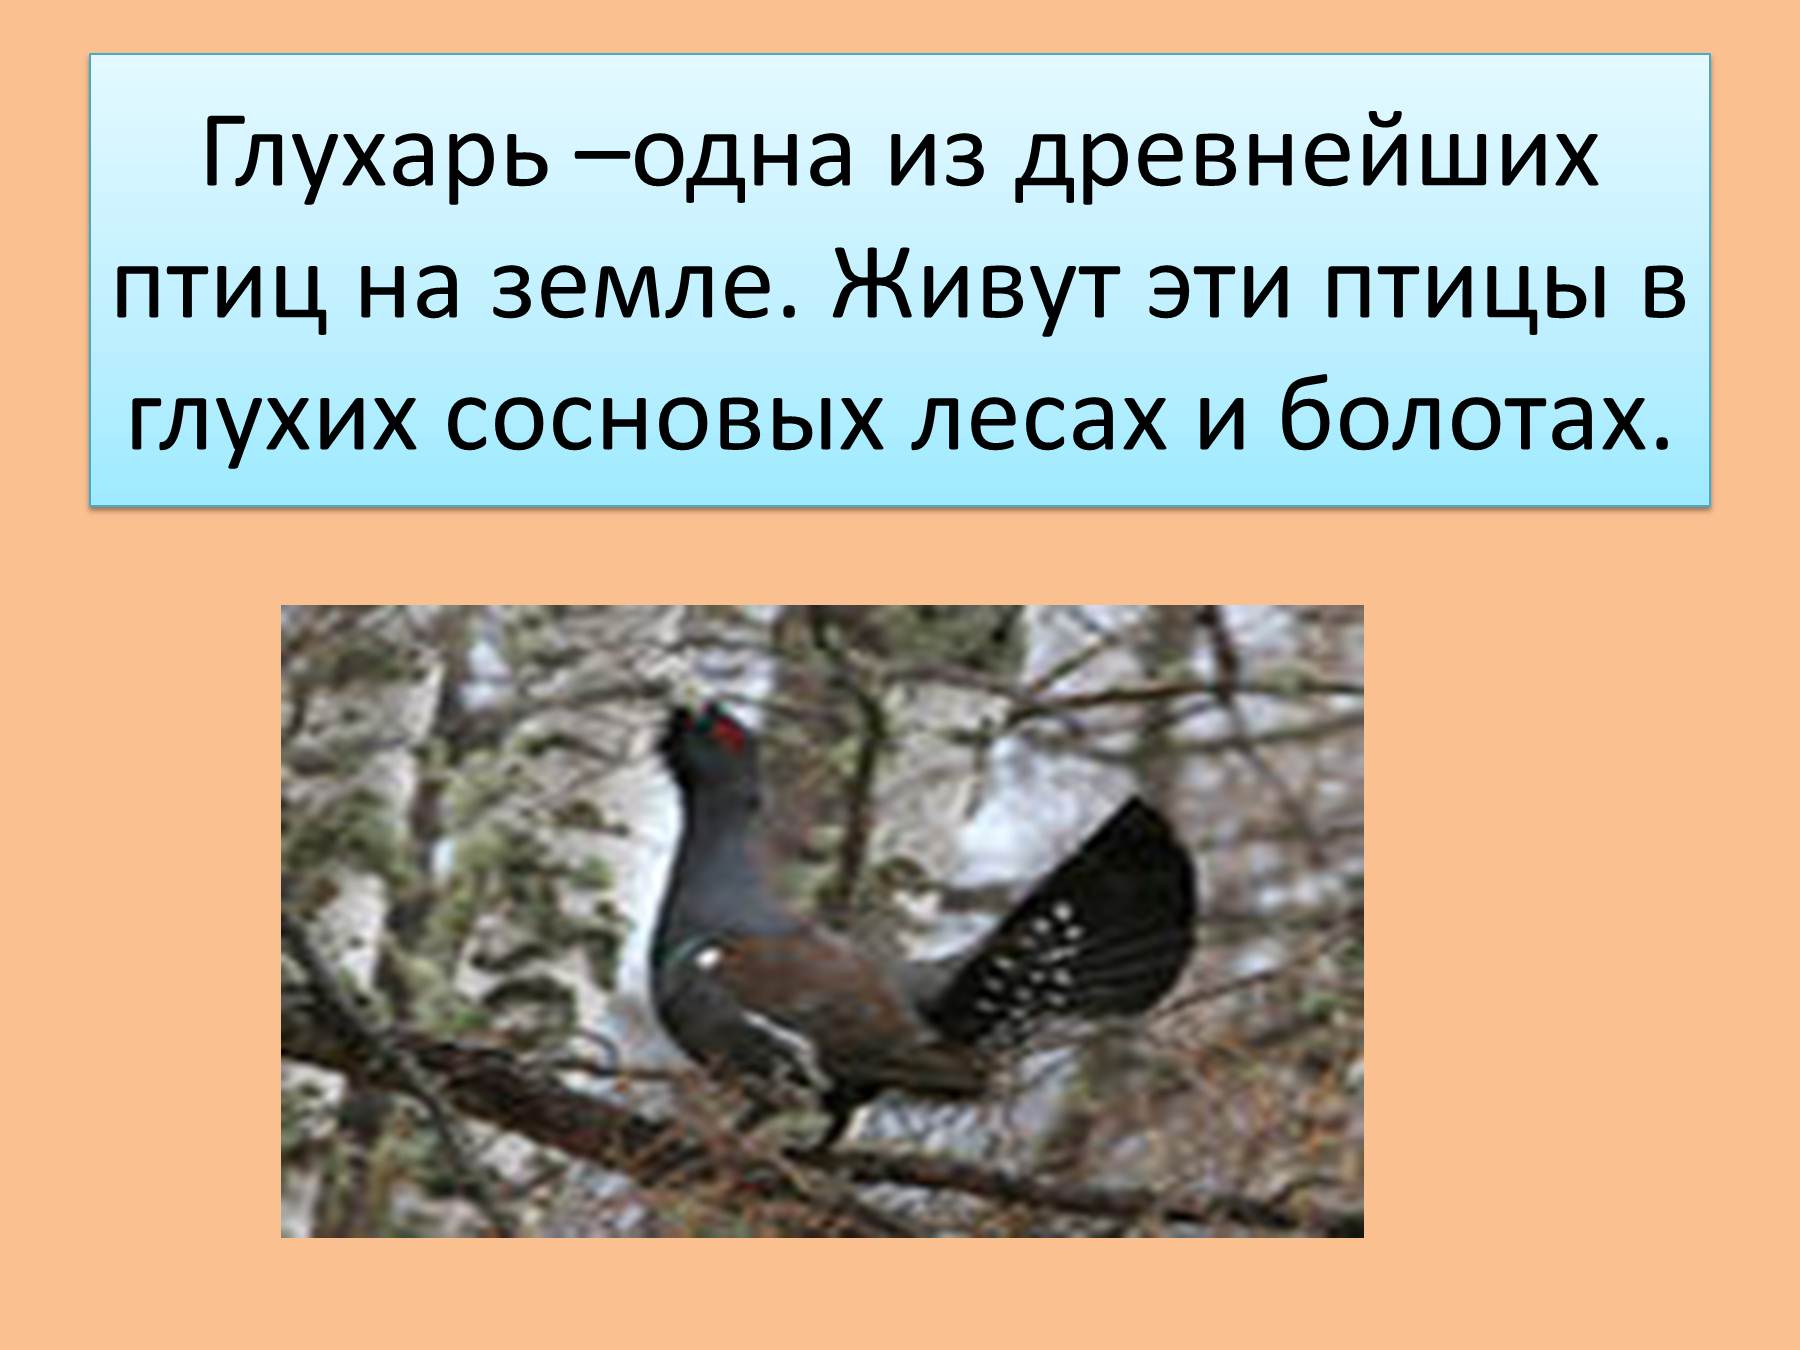 5dd0b6615a6bb - Пословицы про птиц